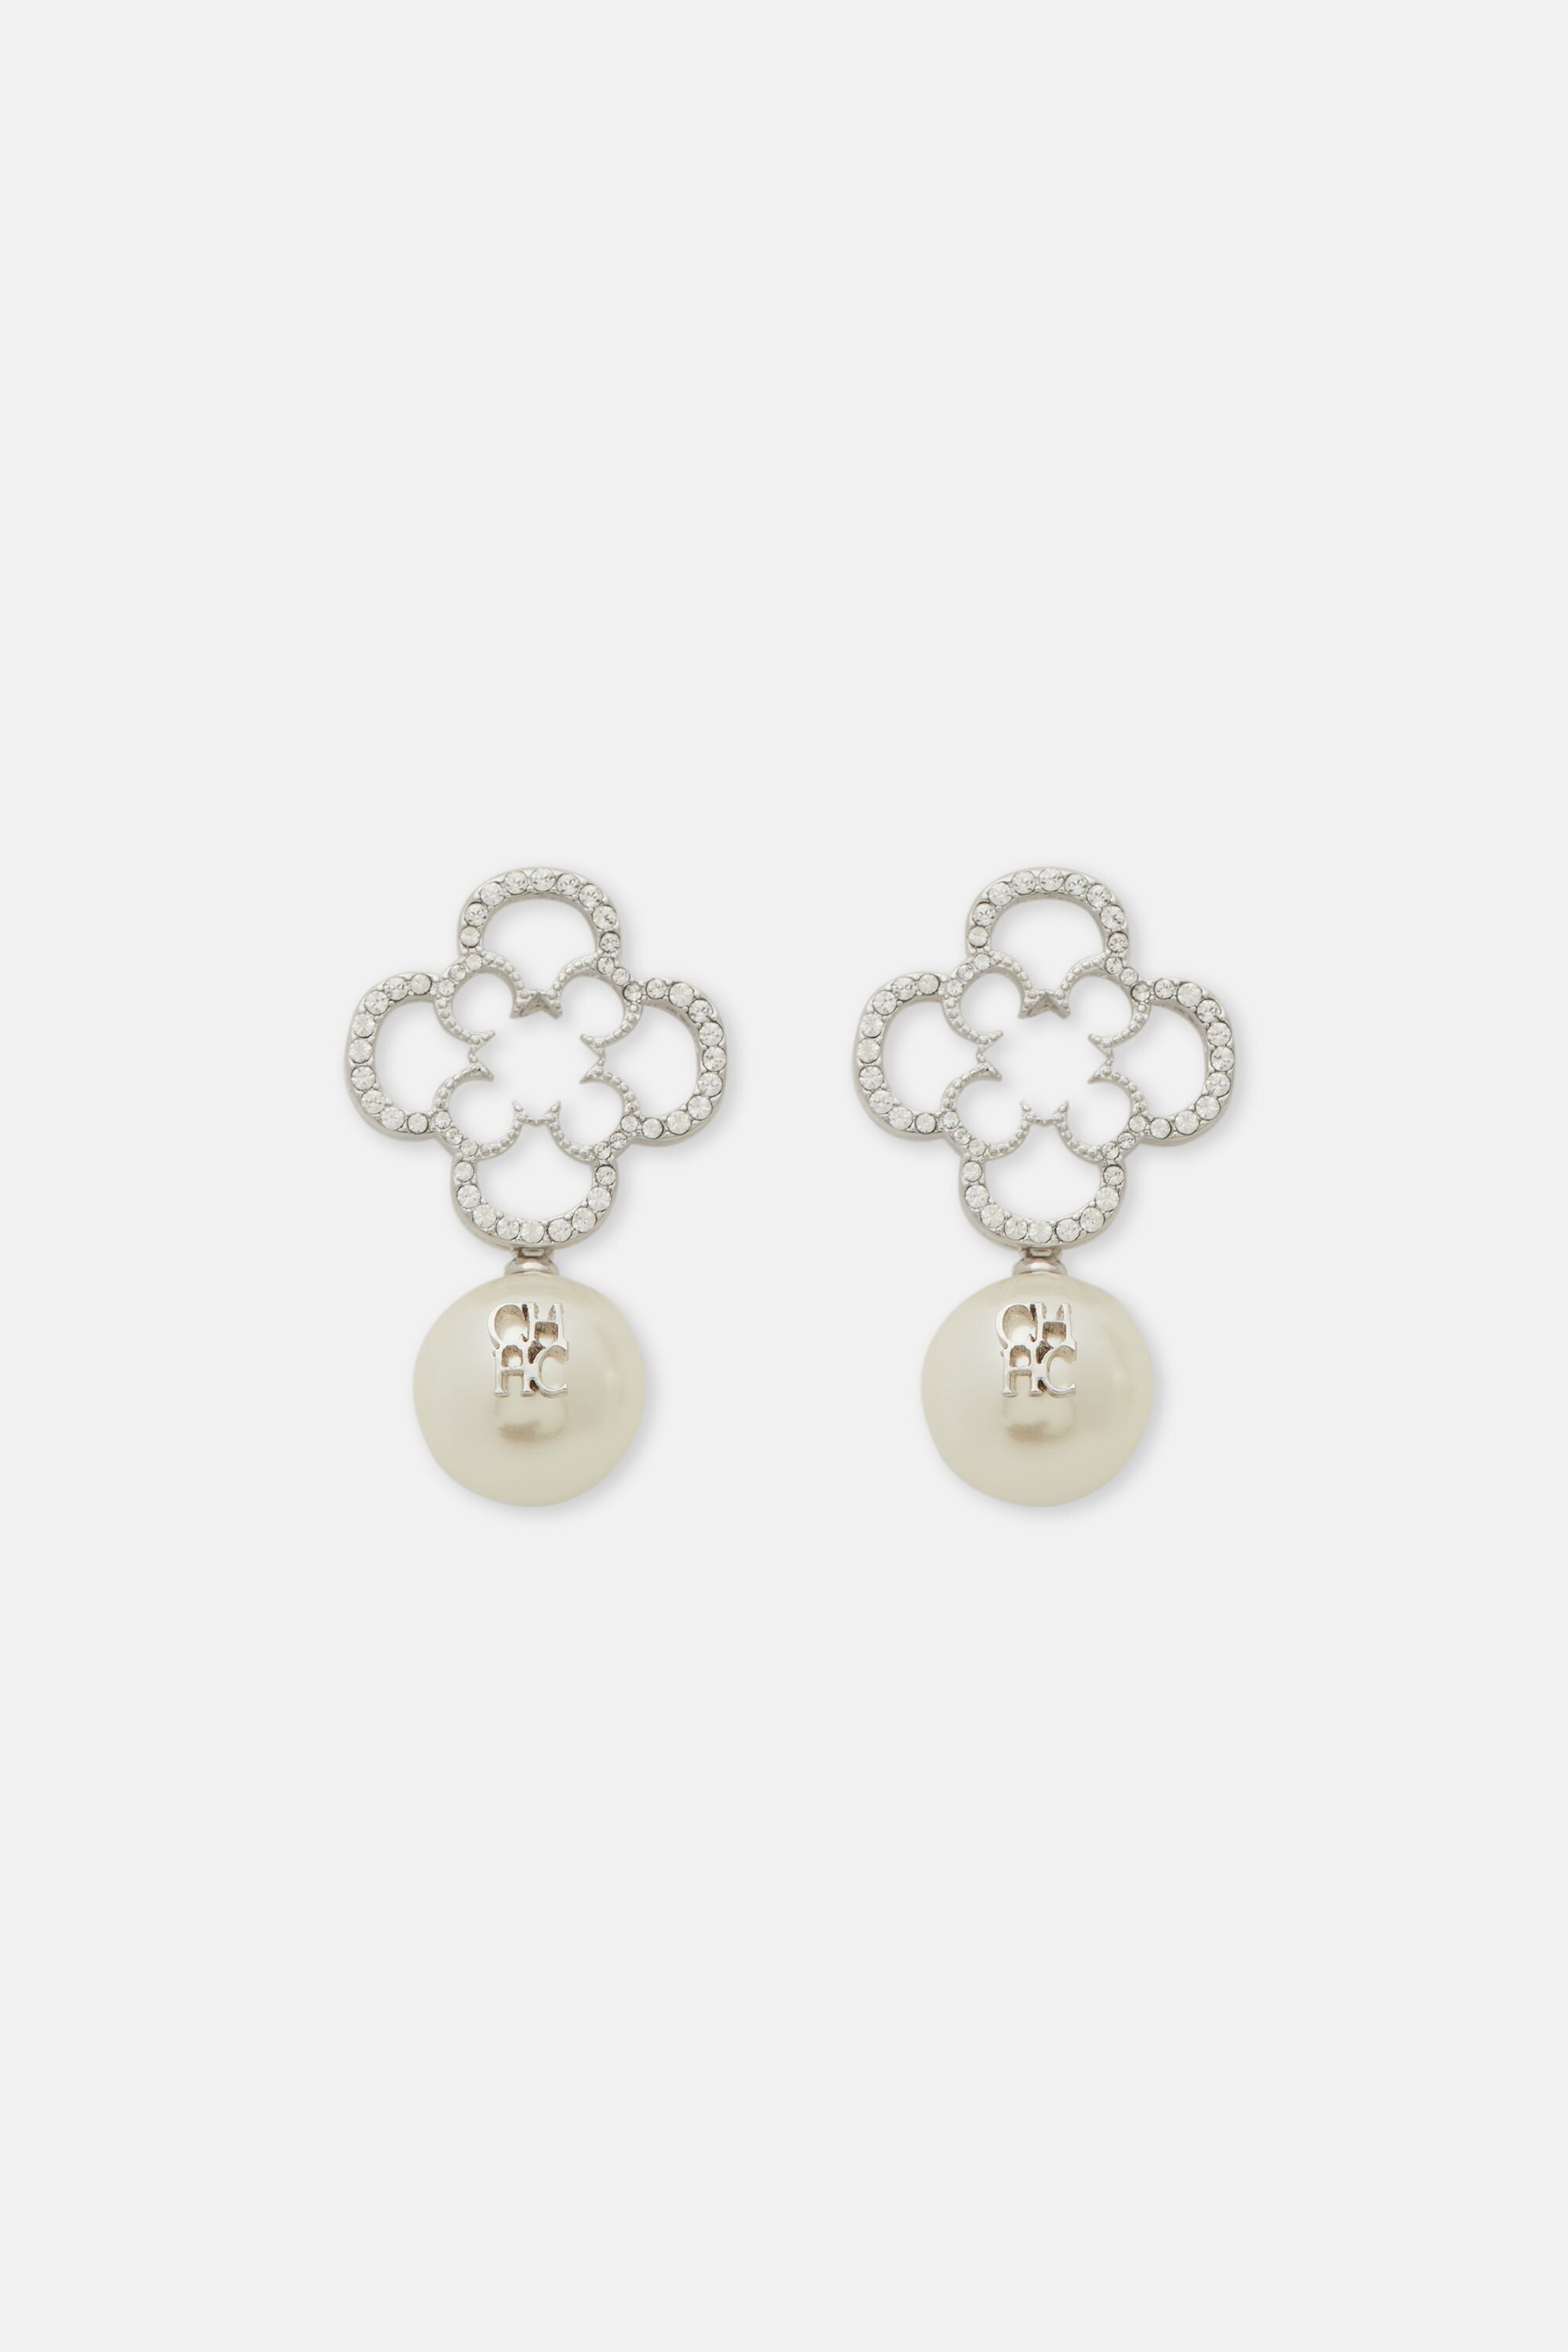 Rosetta Crystal Pearl earrings silver/pearl - CH Carolina Herrera 